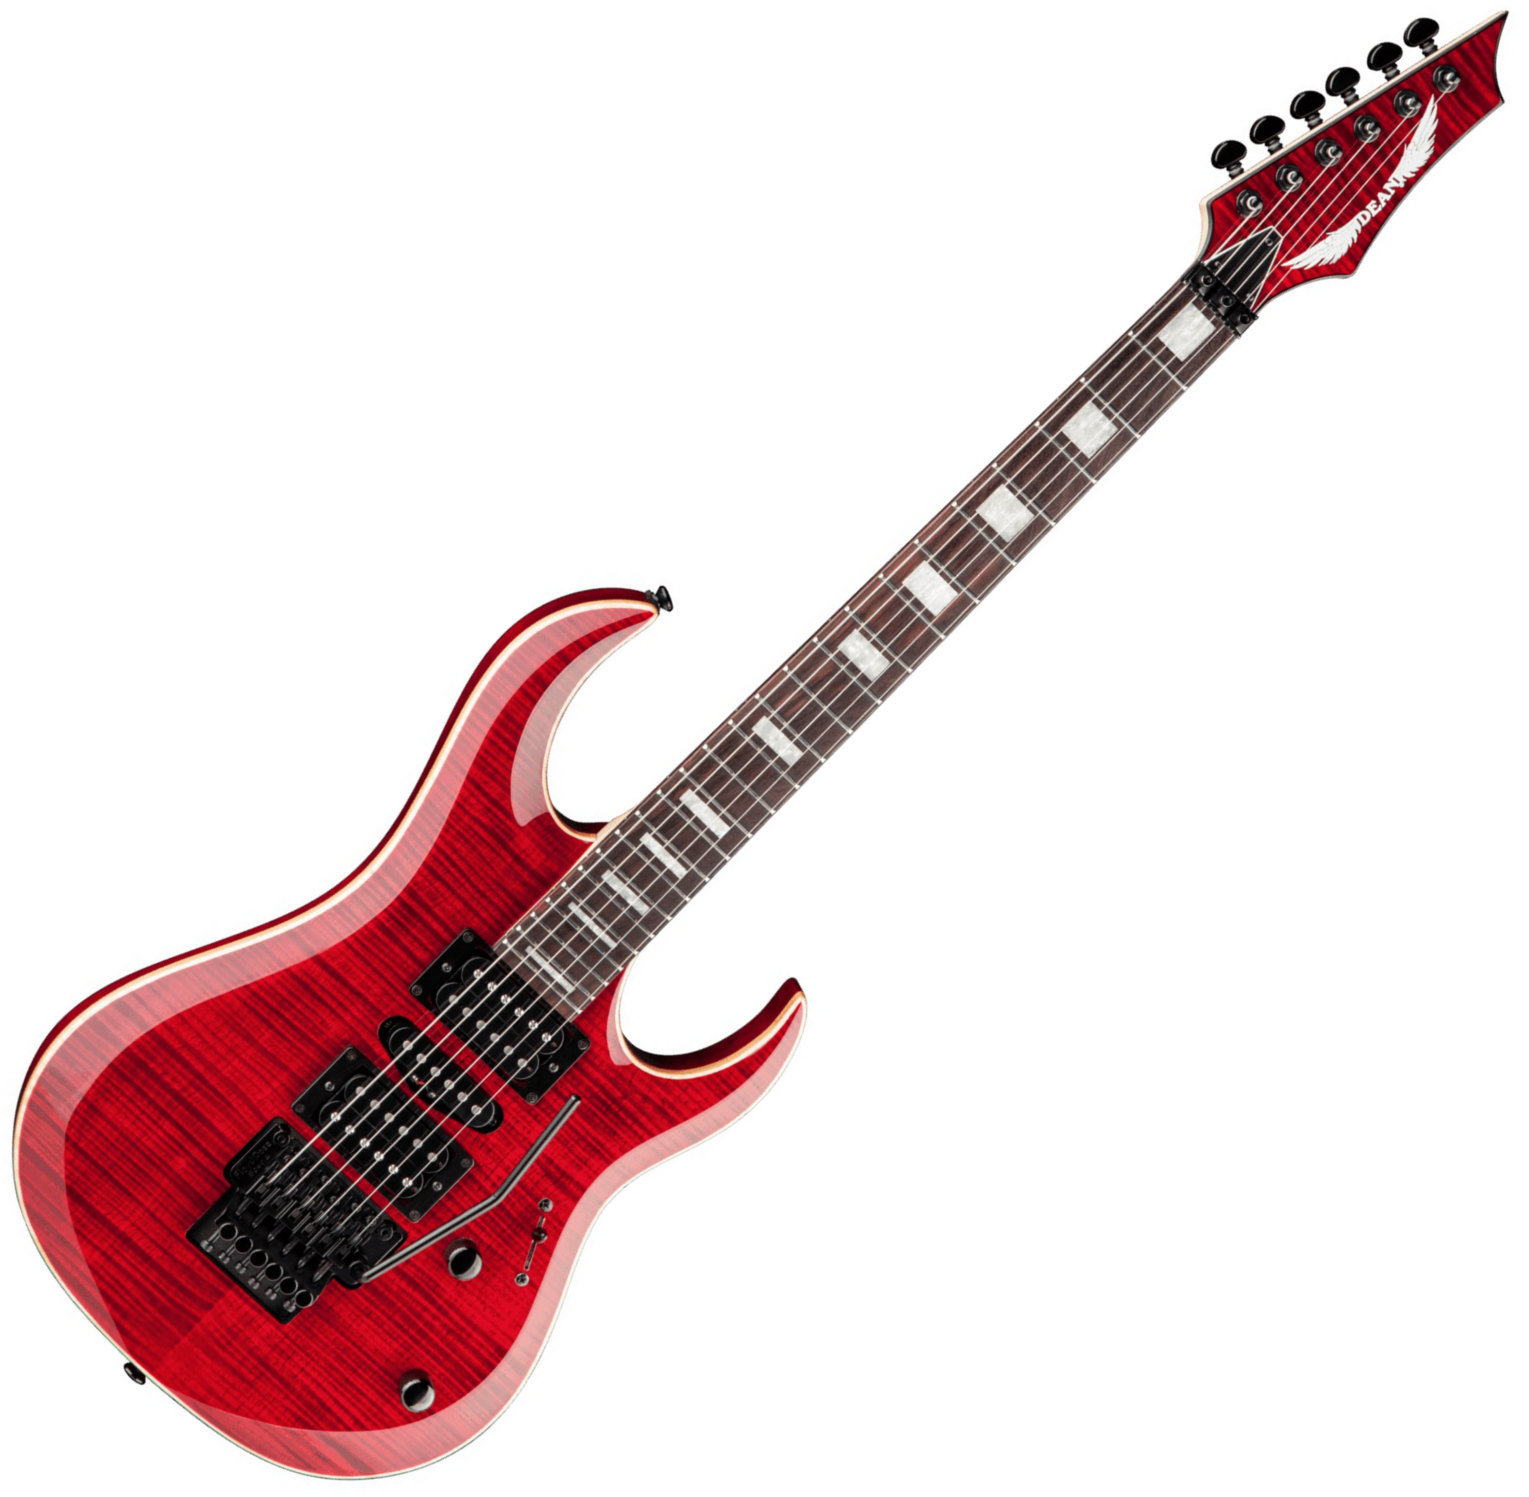 Signature Electric Guitar Dean Guitars Michael Batio MAB3 Flame Top - Trans Red